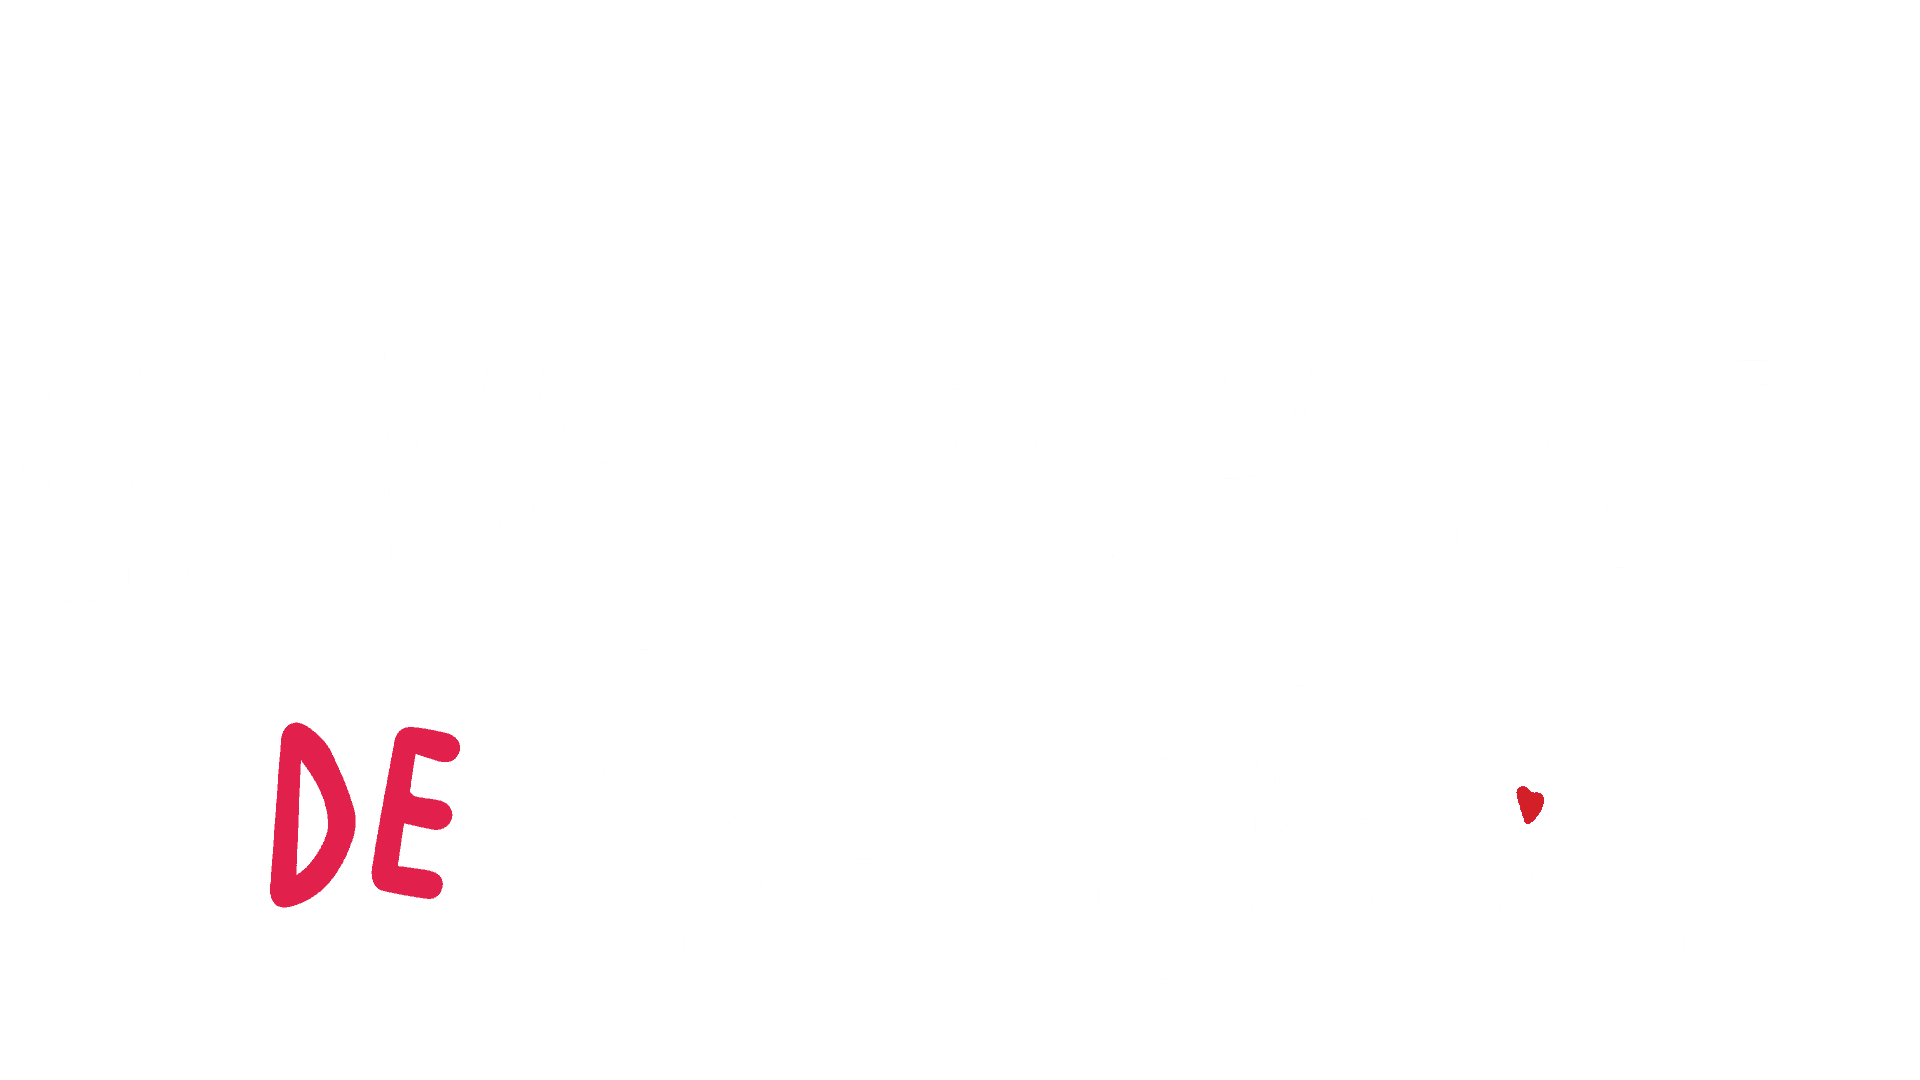 La vie compliquée de Léa Olivier